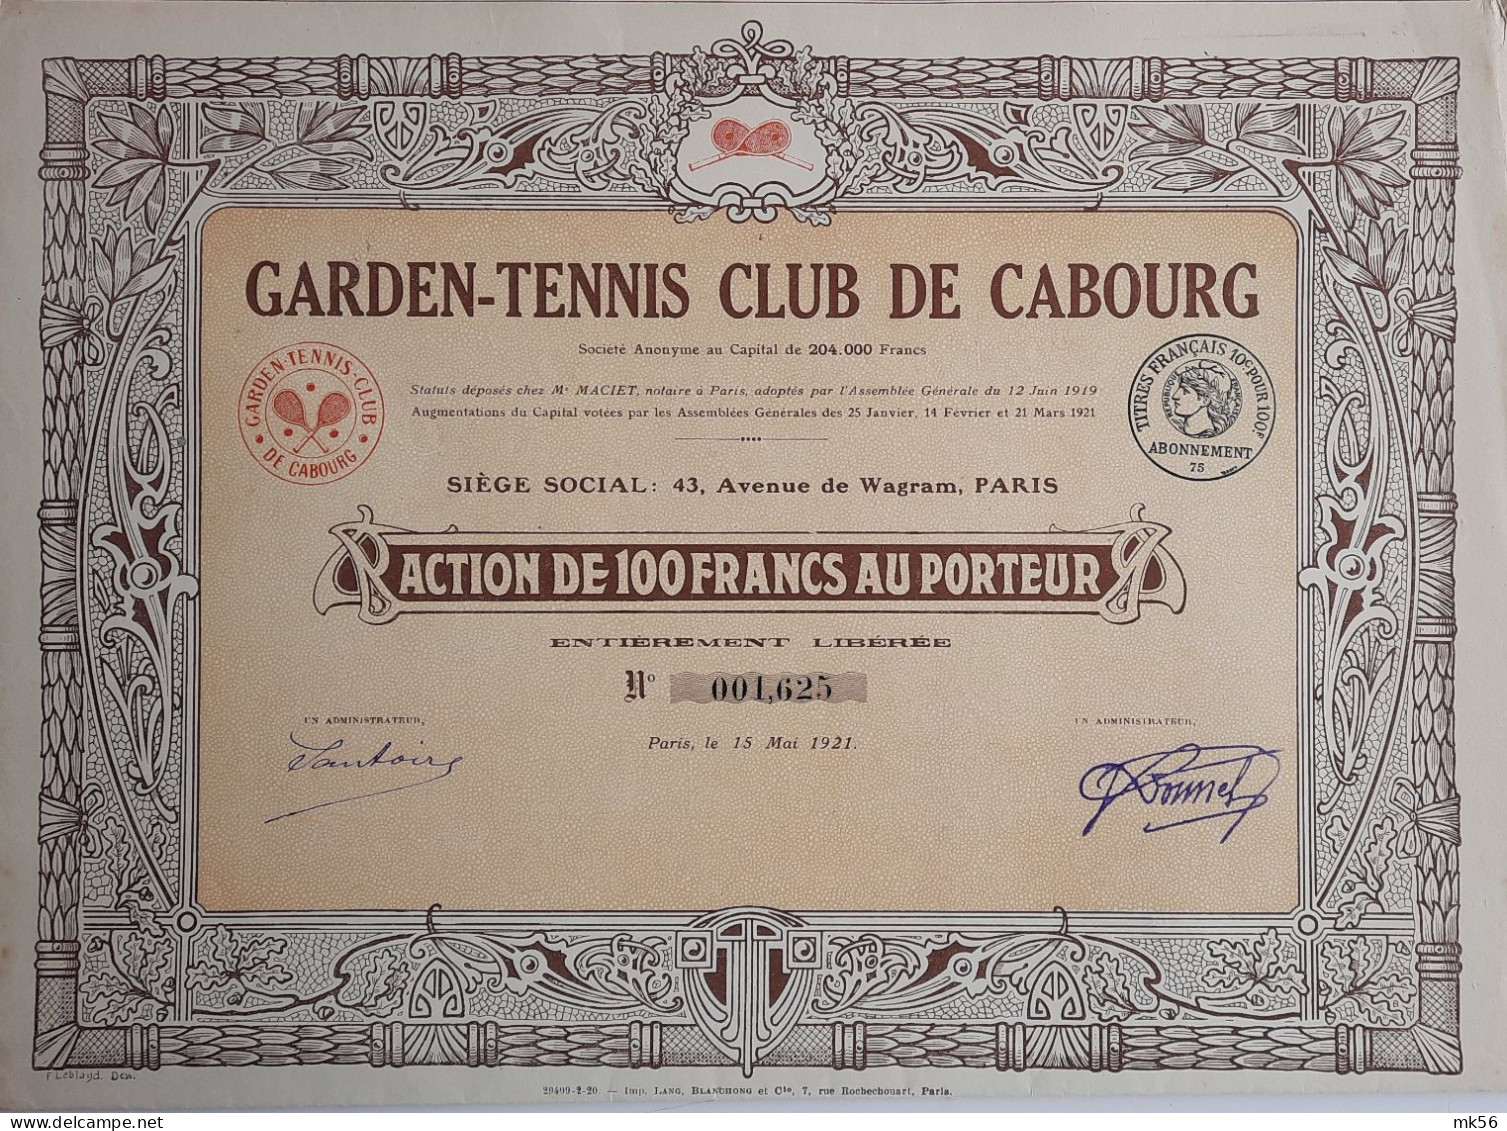 Garden-Tennis Club De Cabourg - Paris - 1921 - Sport